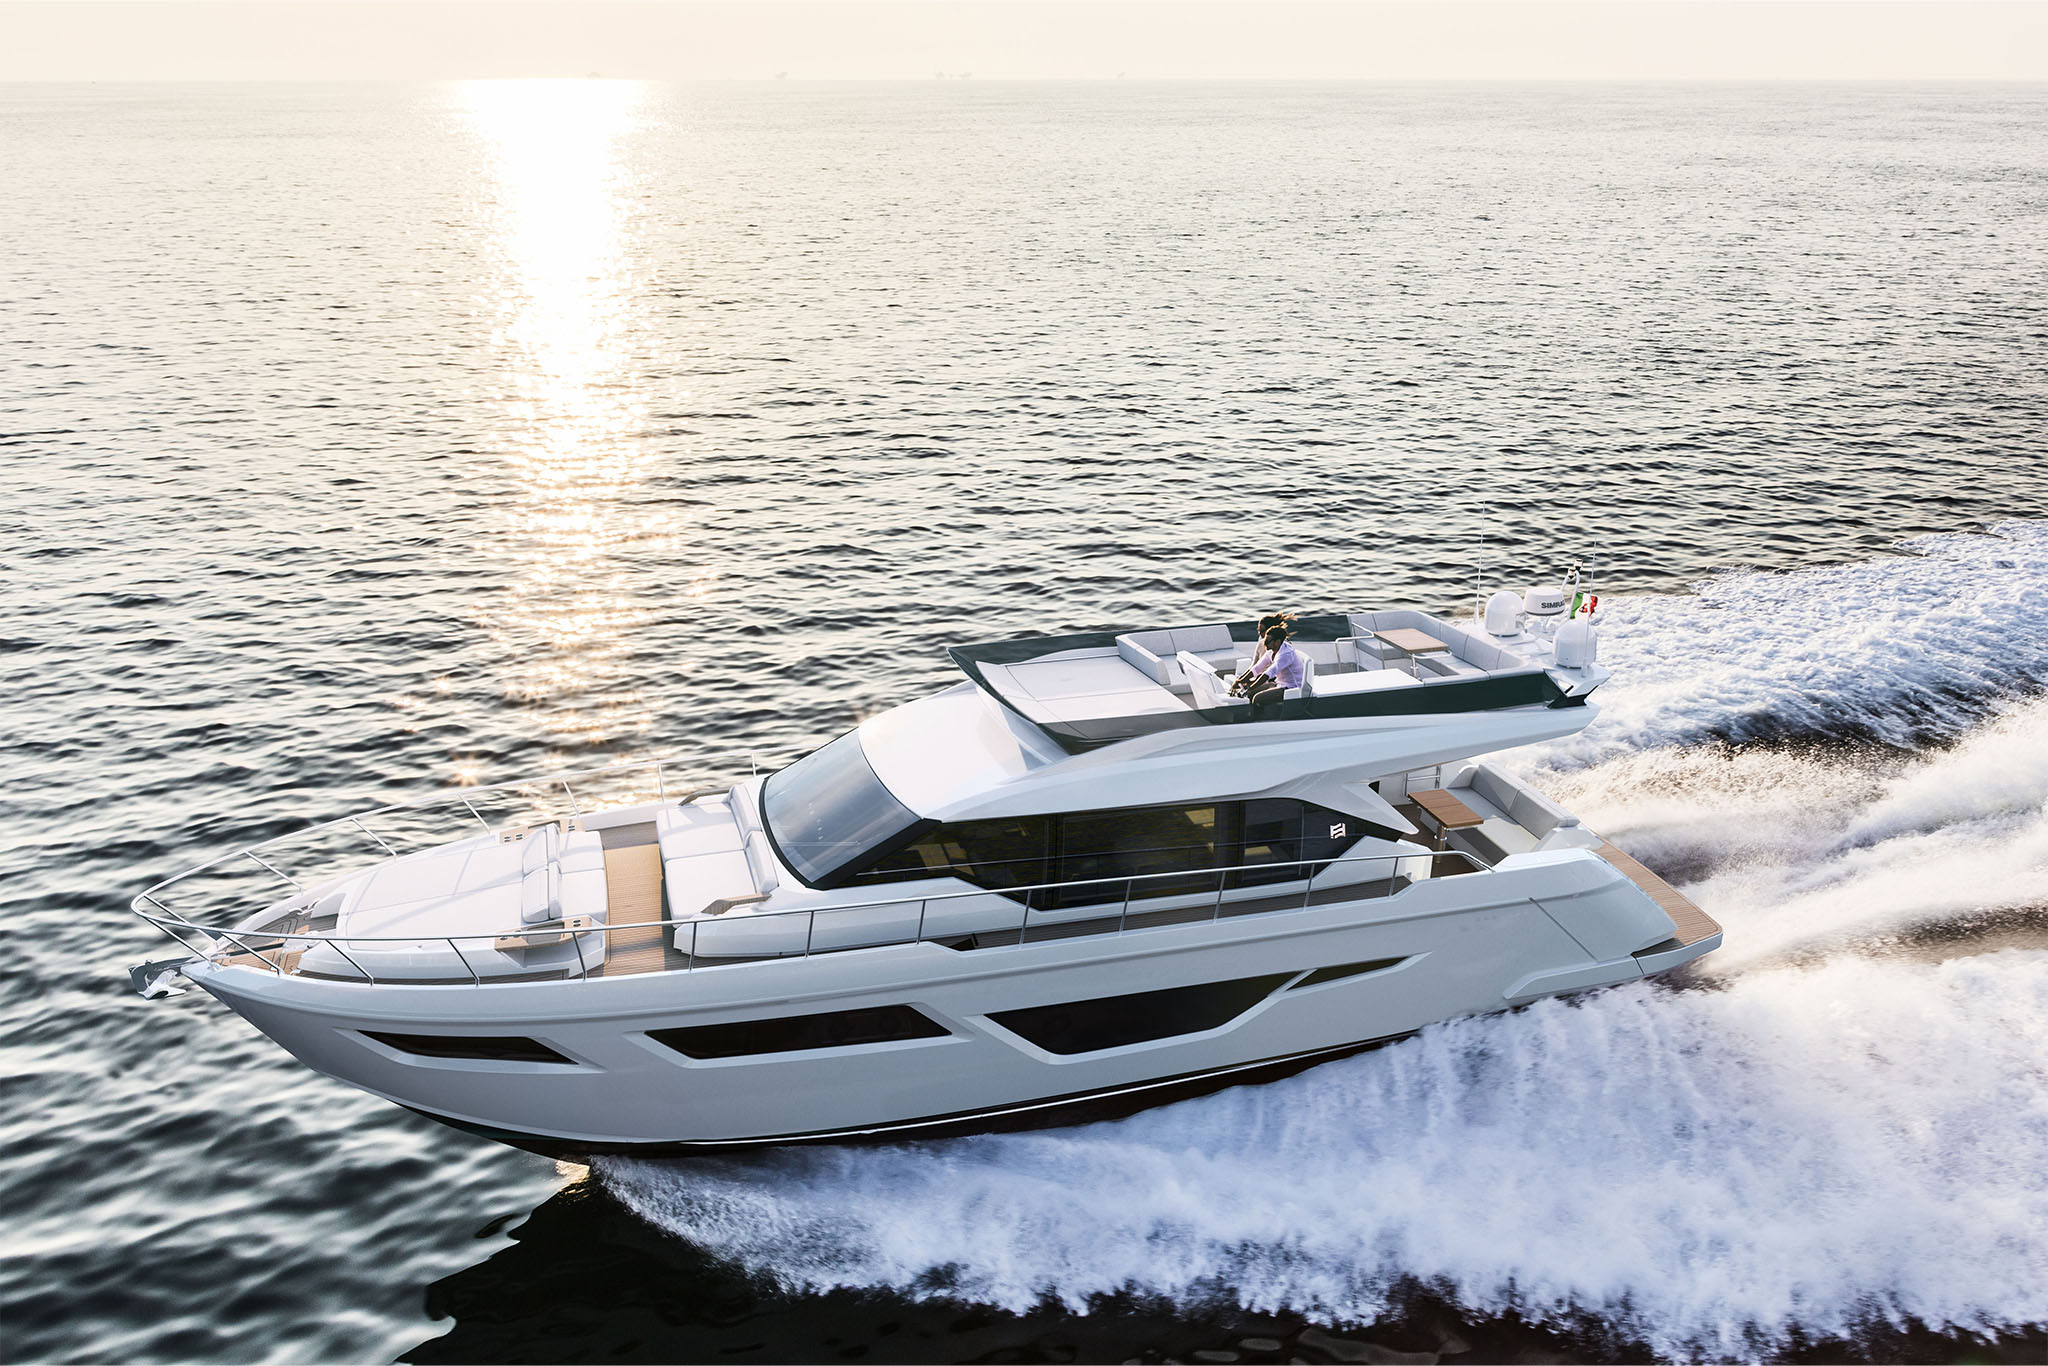 ferretti yachts 580 prezzo